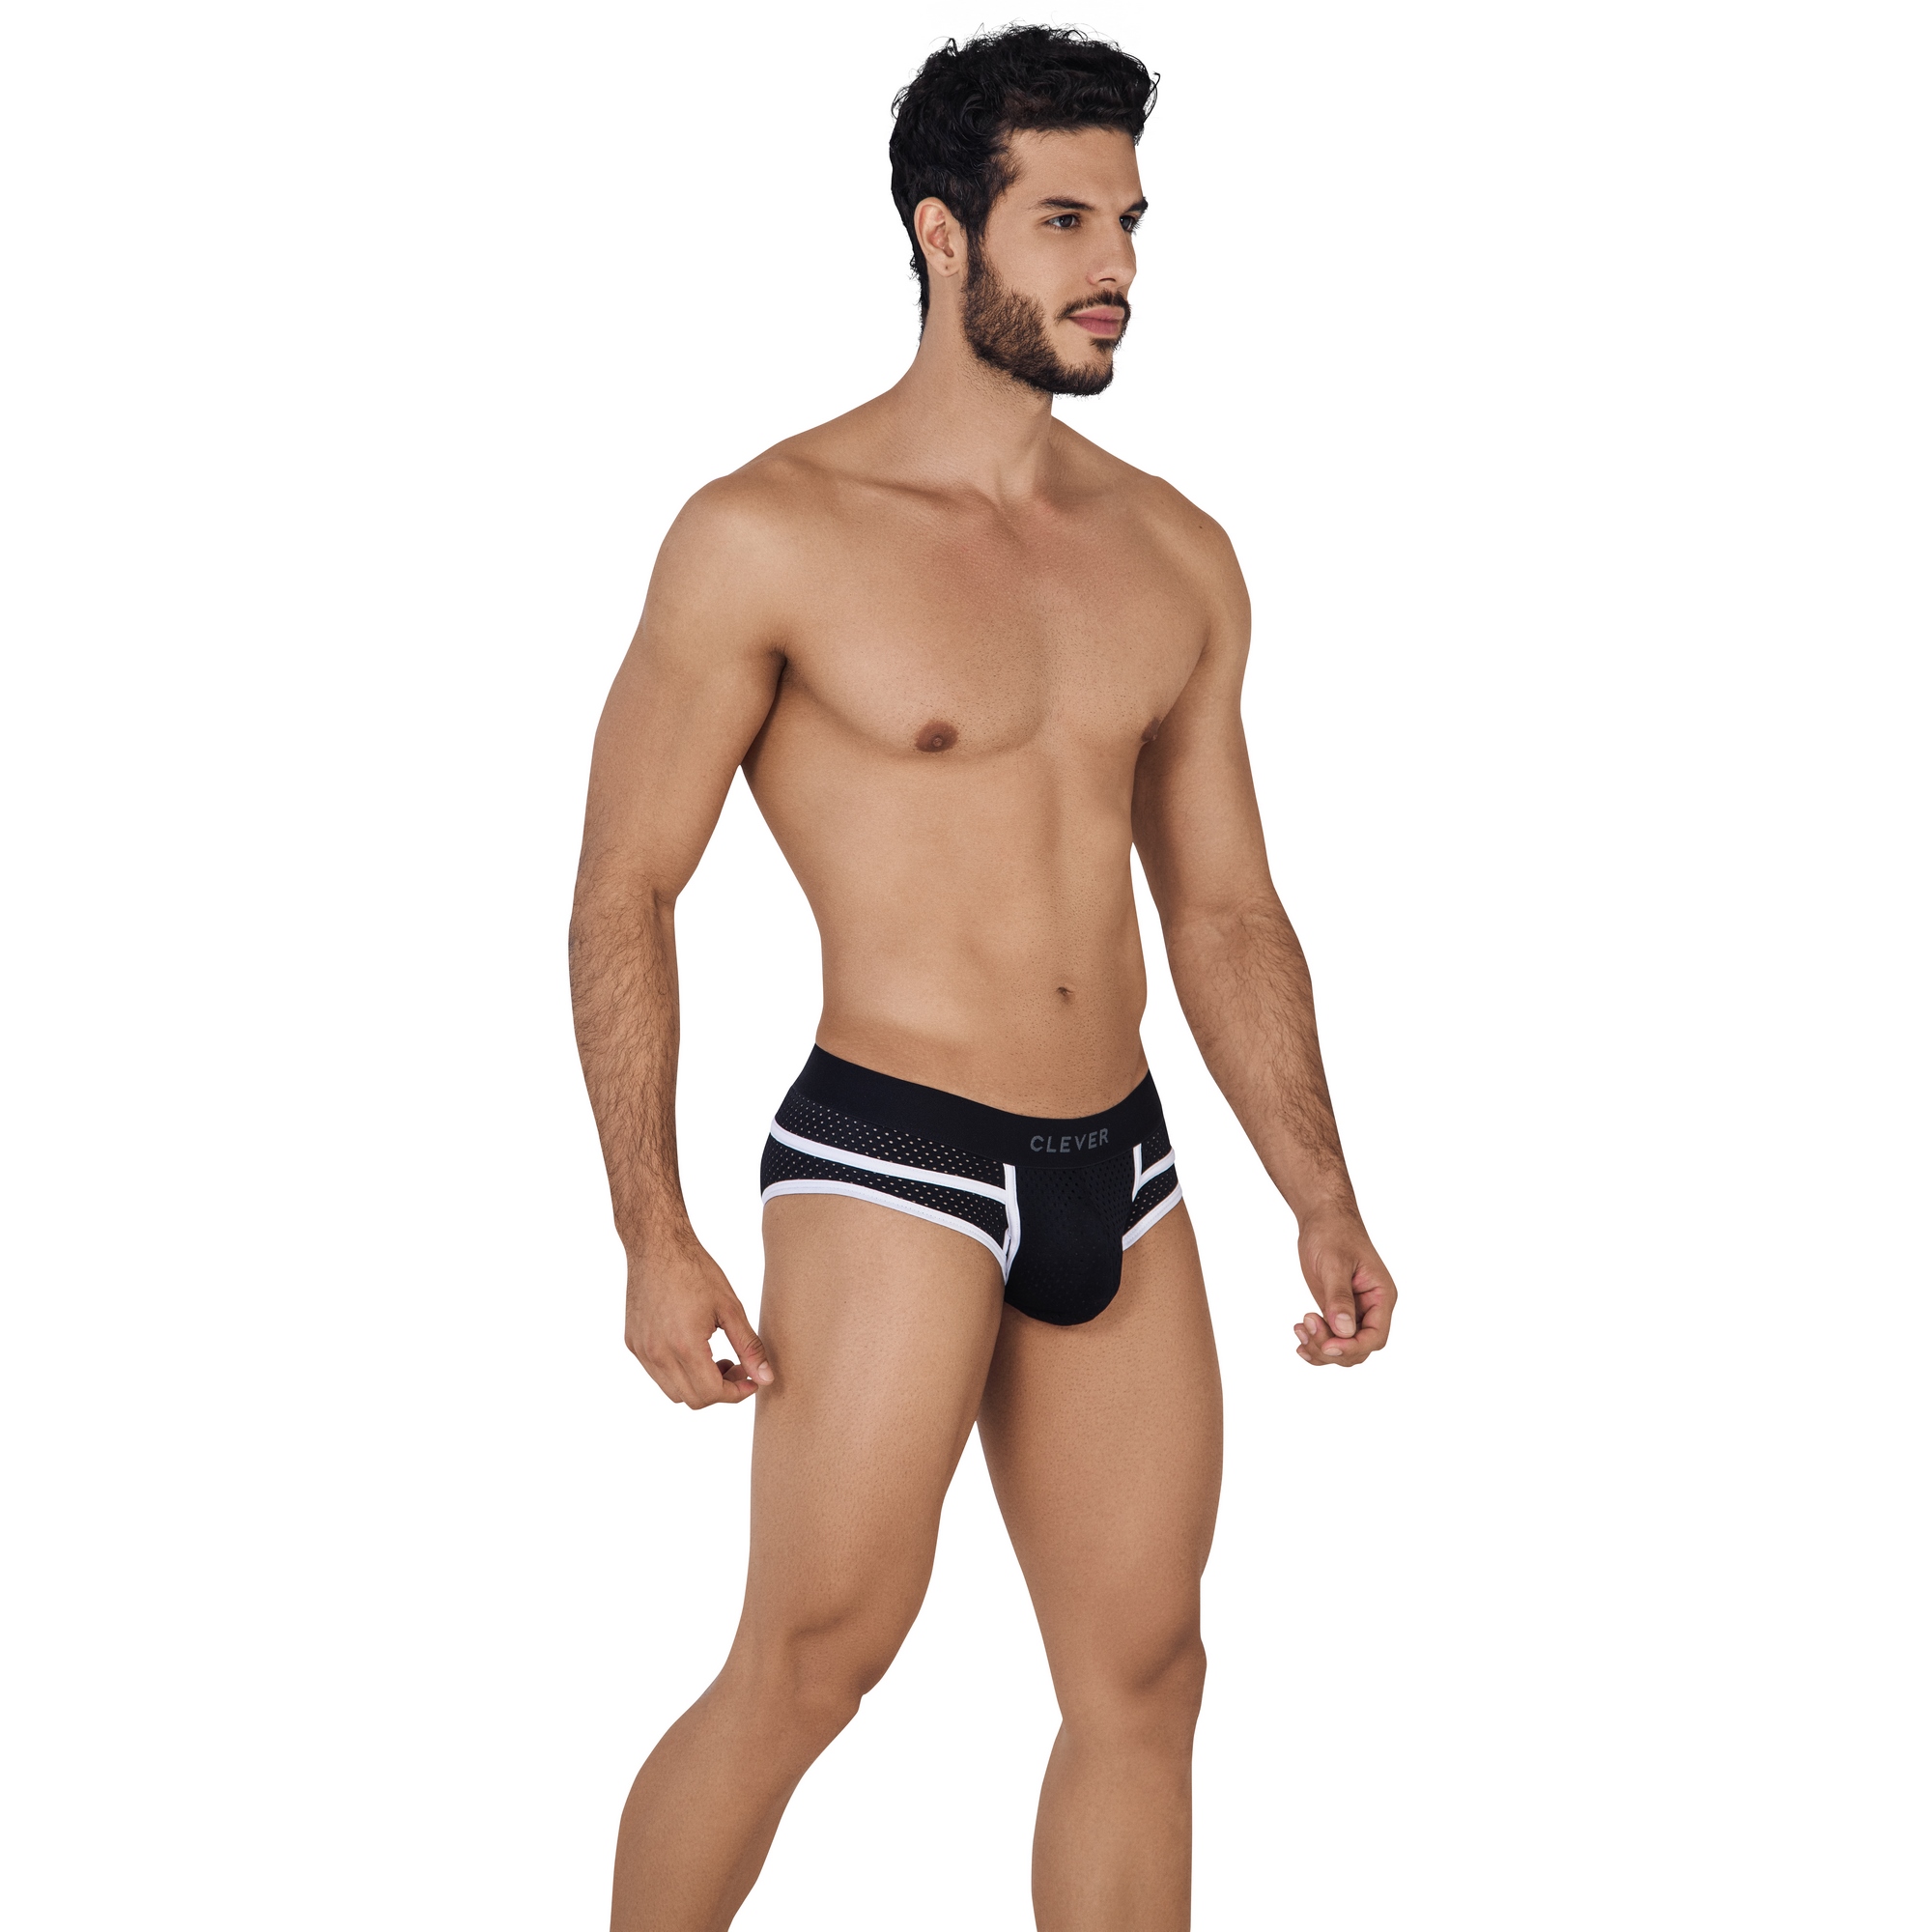 Трусы мужские Clever Masculine Underwear 0620 черные M